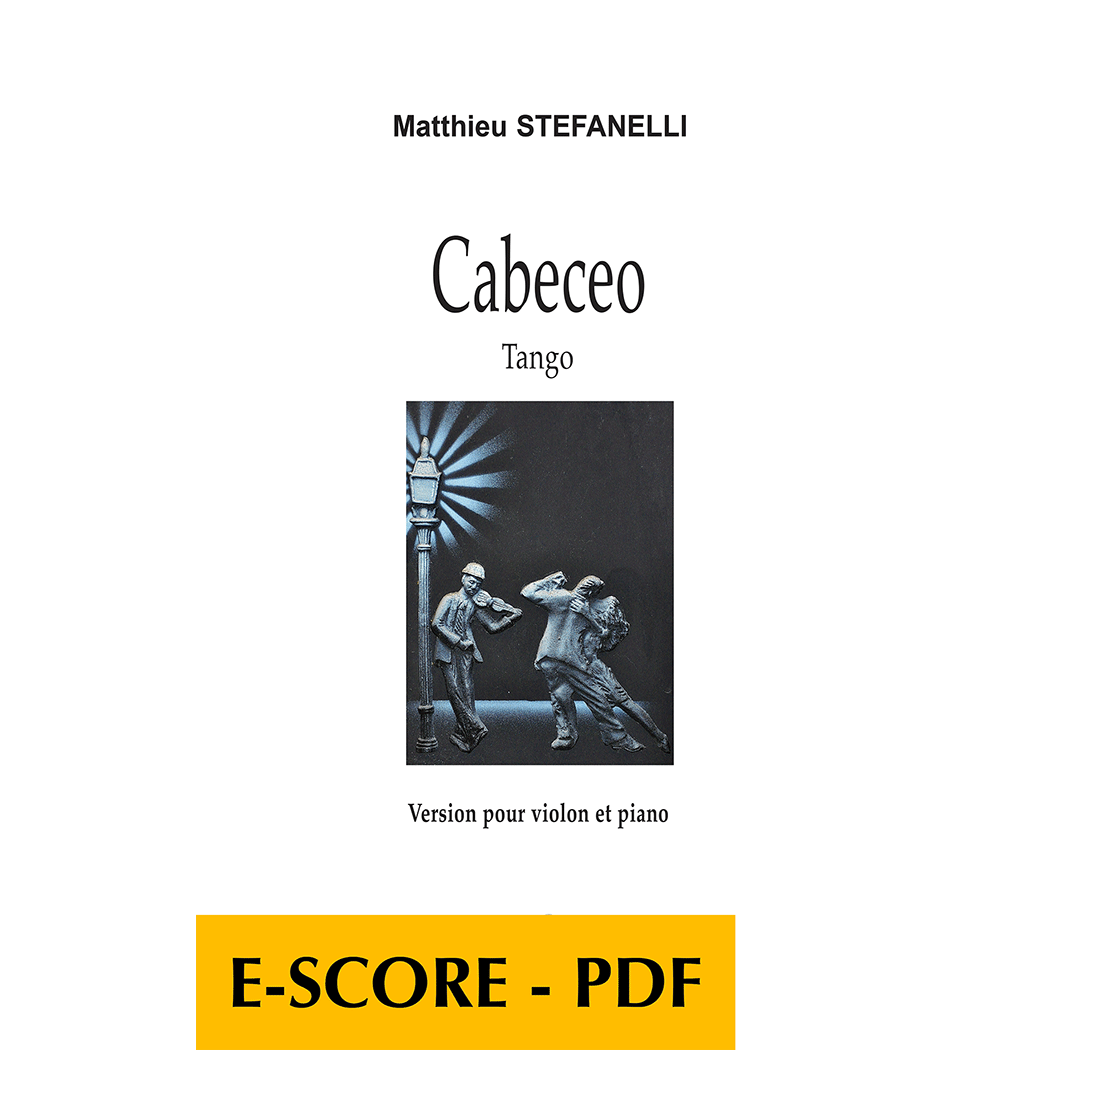 Cabeceo - Tango for violin and piano - E-score PDF